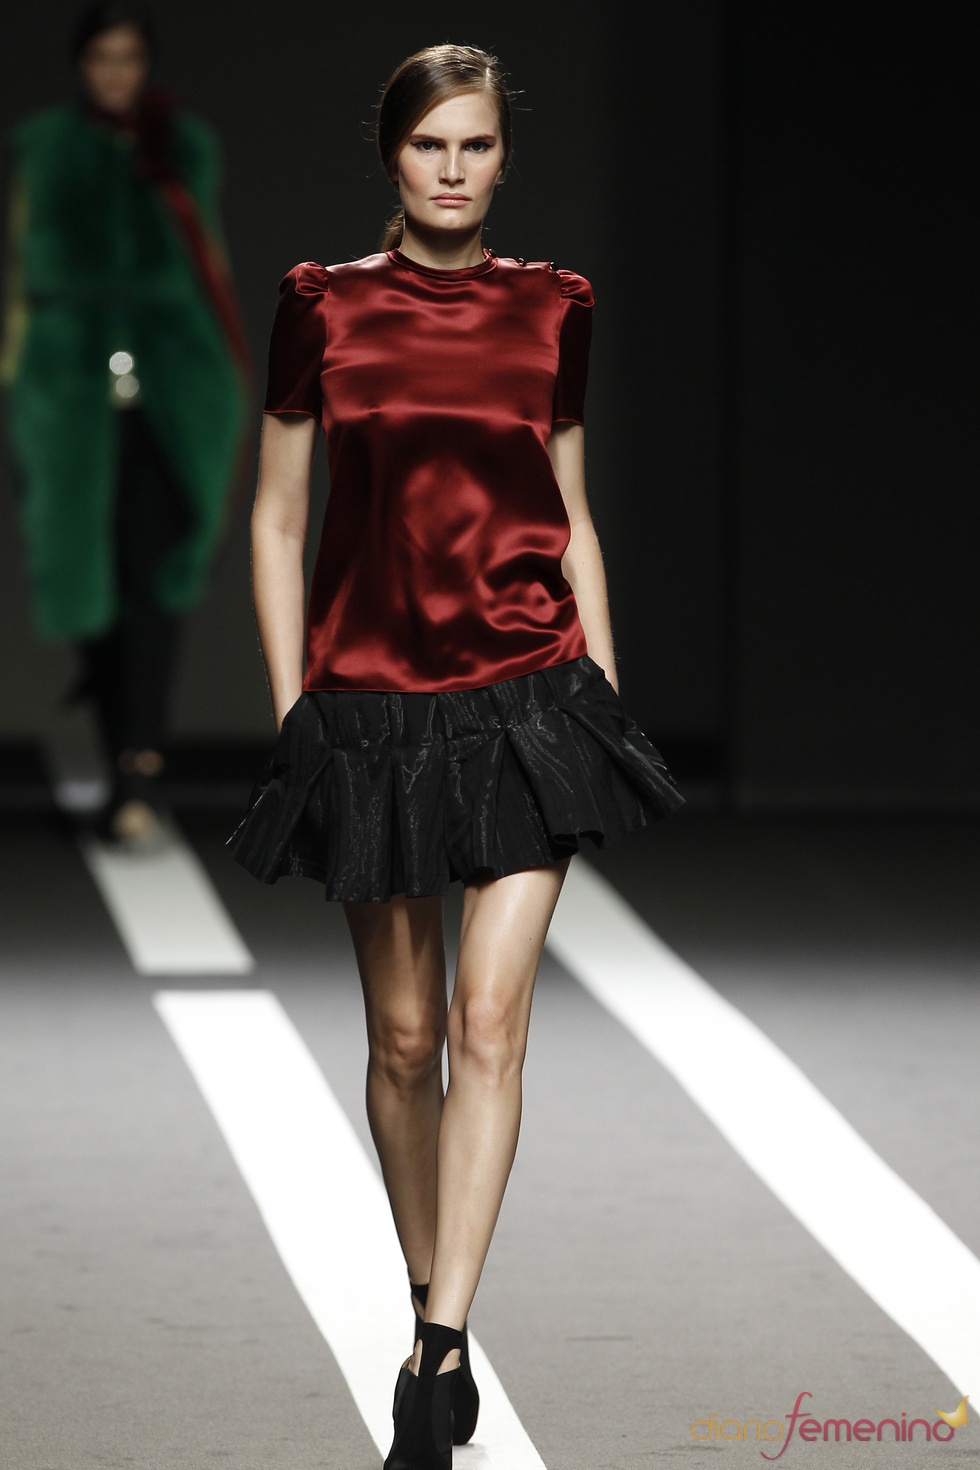 Blusa granate con falda negra. Miguel Palacio. Cibeles Madrid Fashion Week 2011